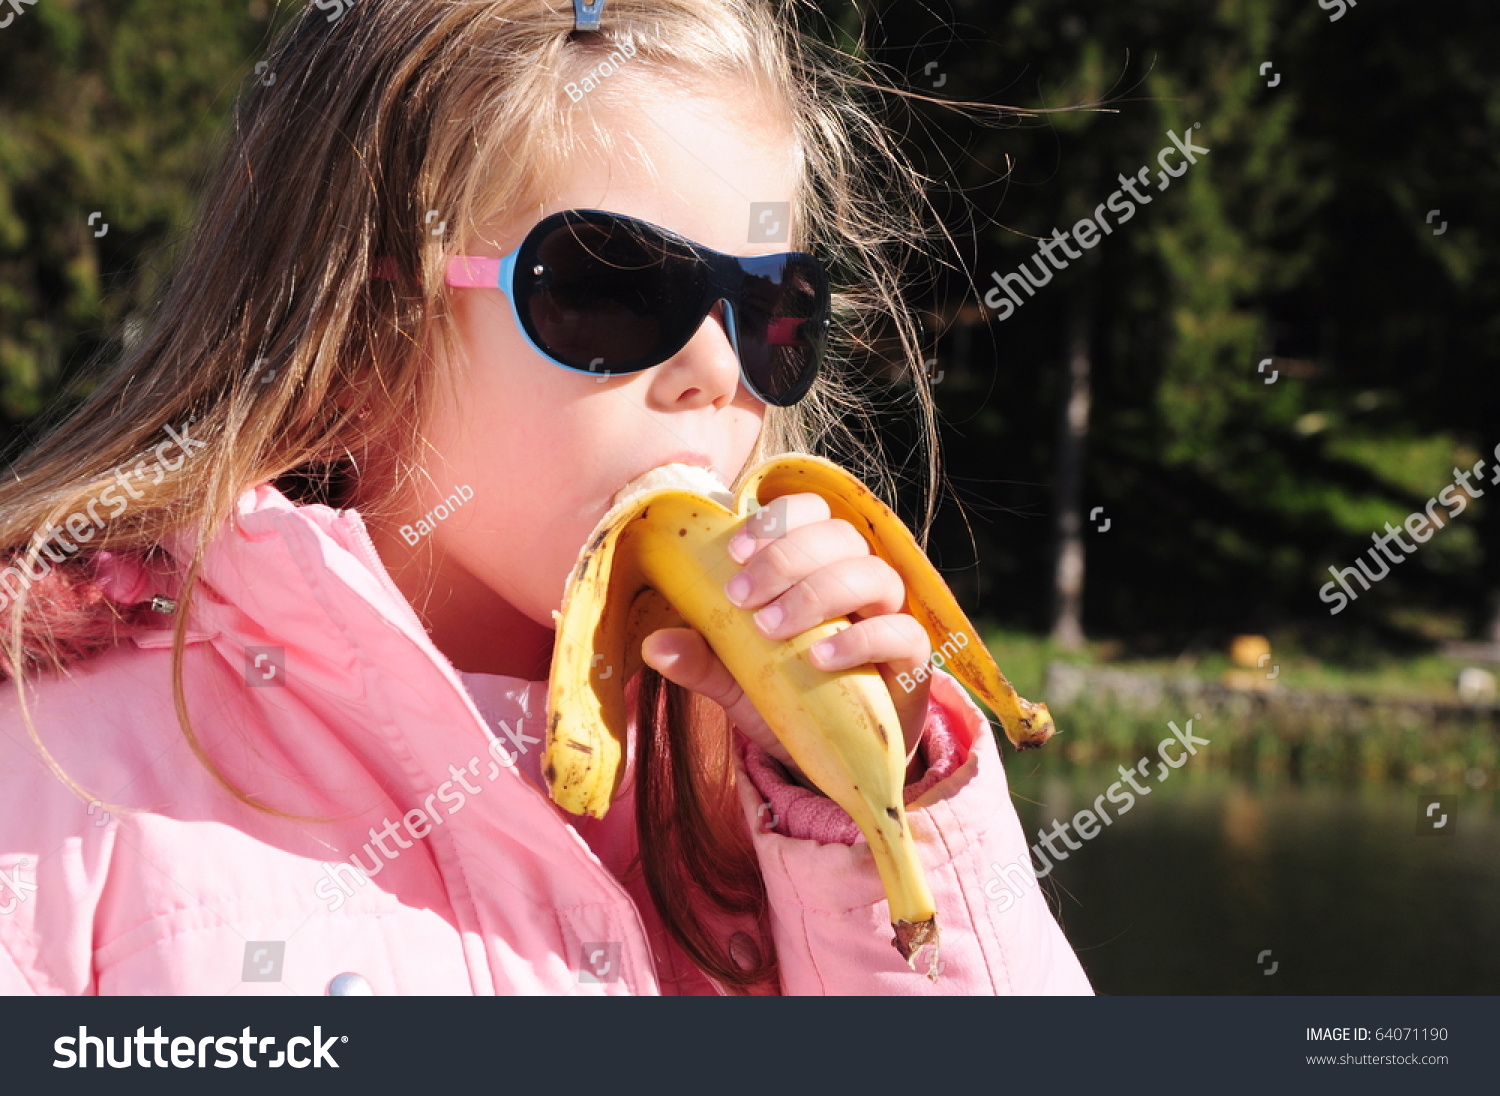 Дамочка трахает себя бананом в лесу